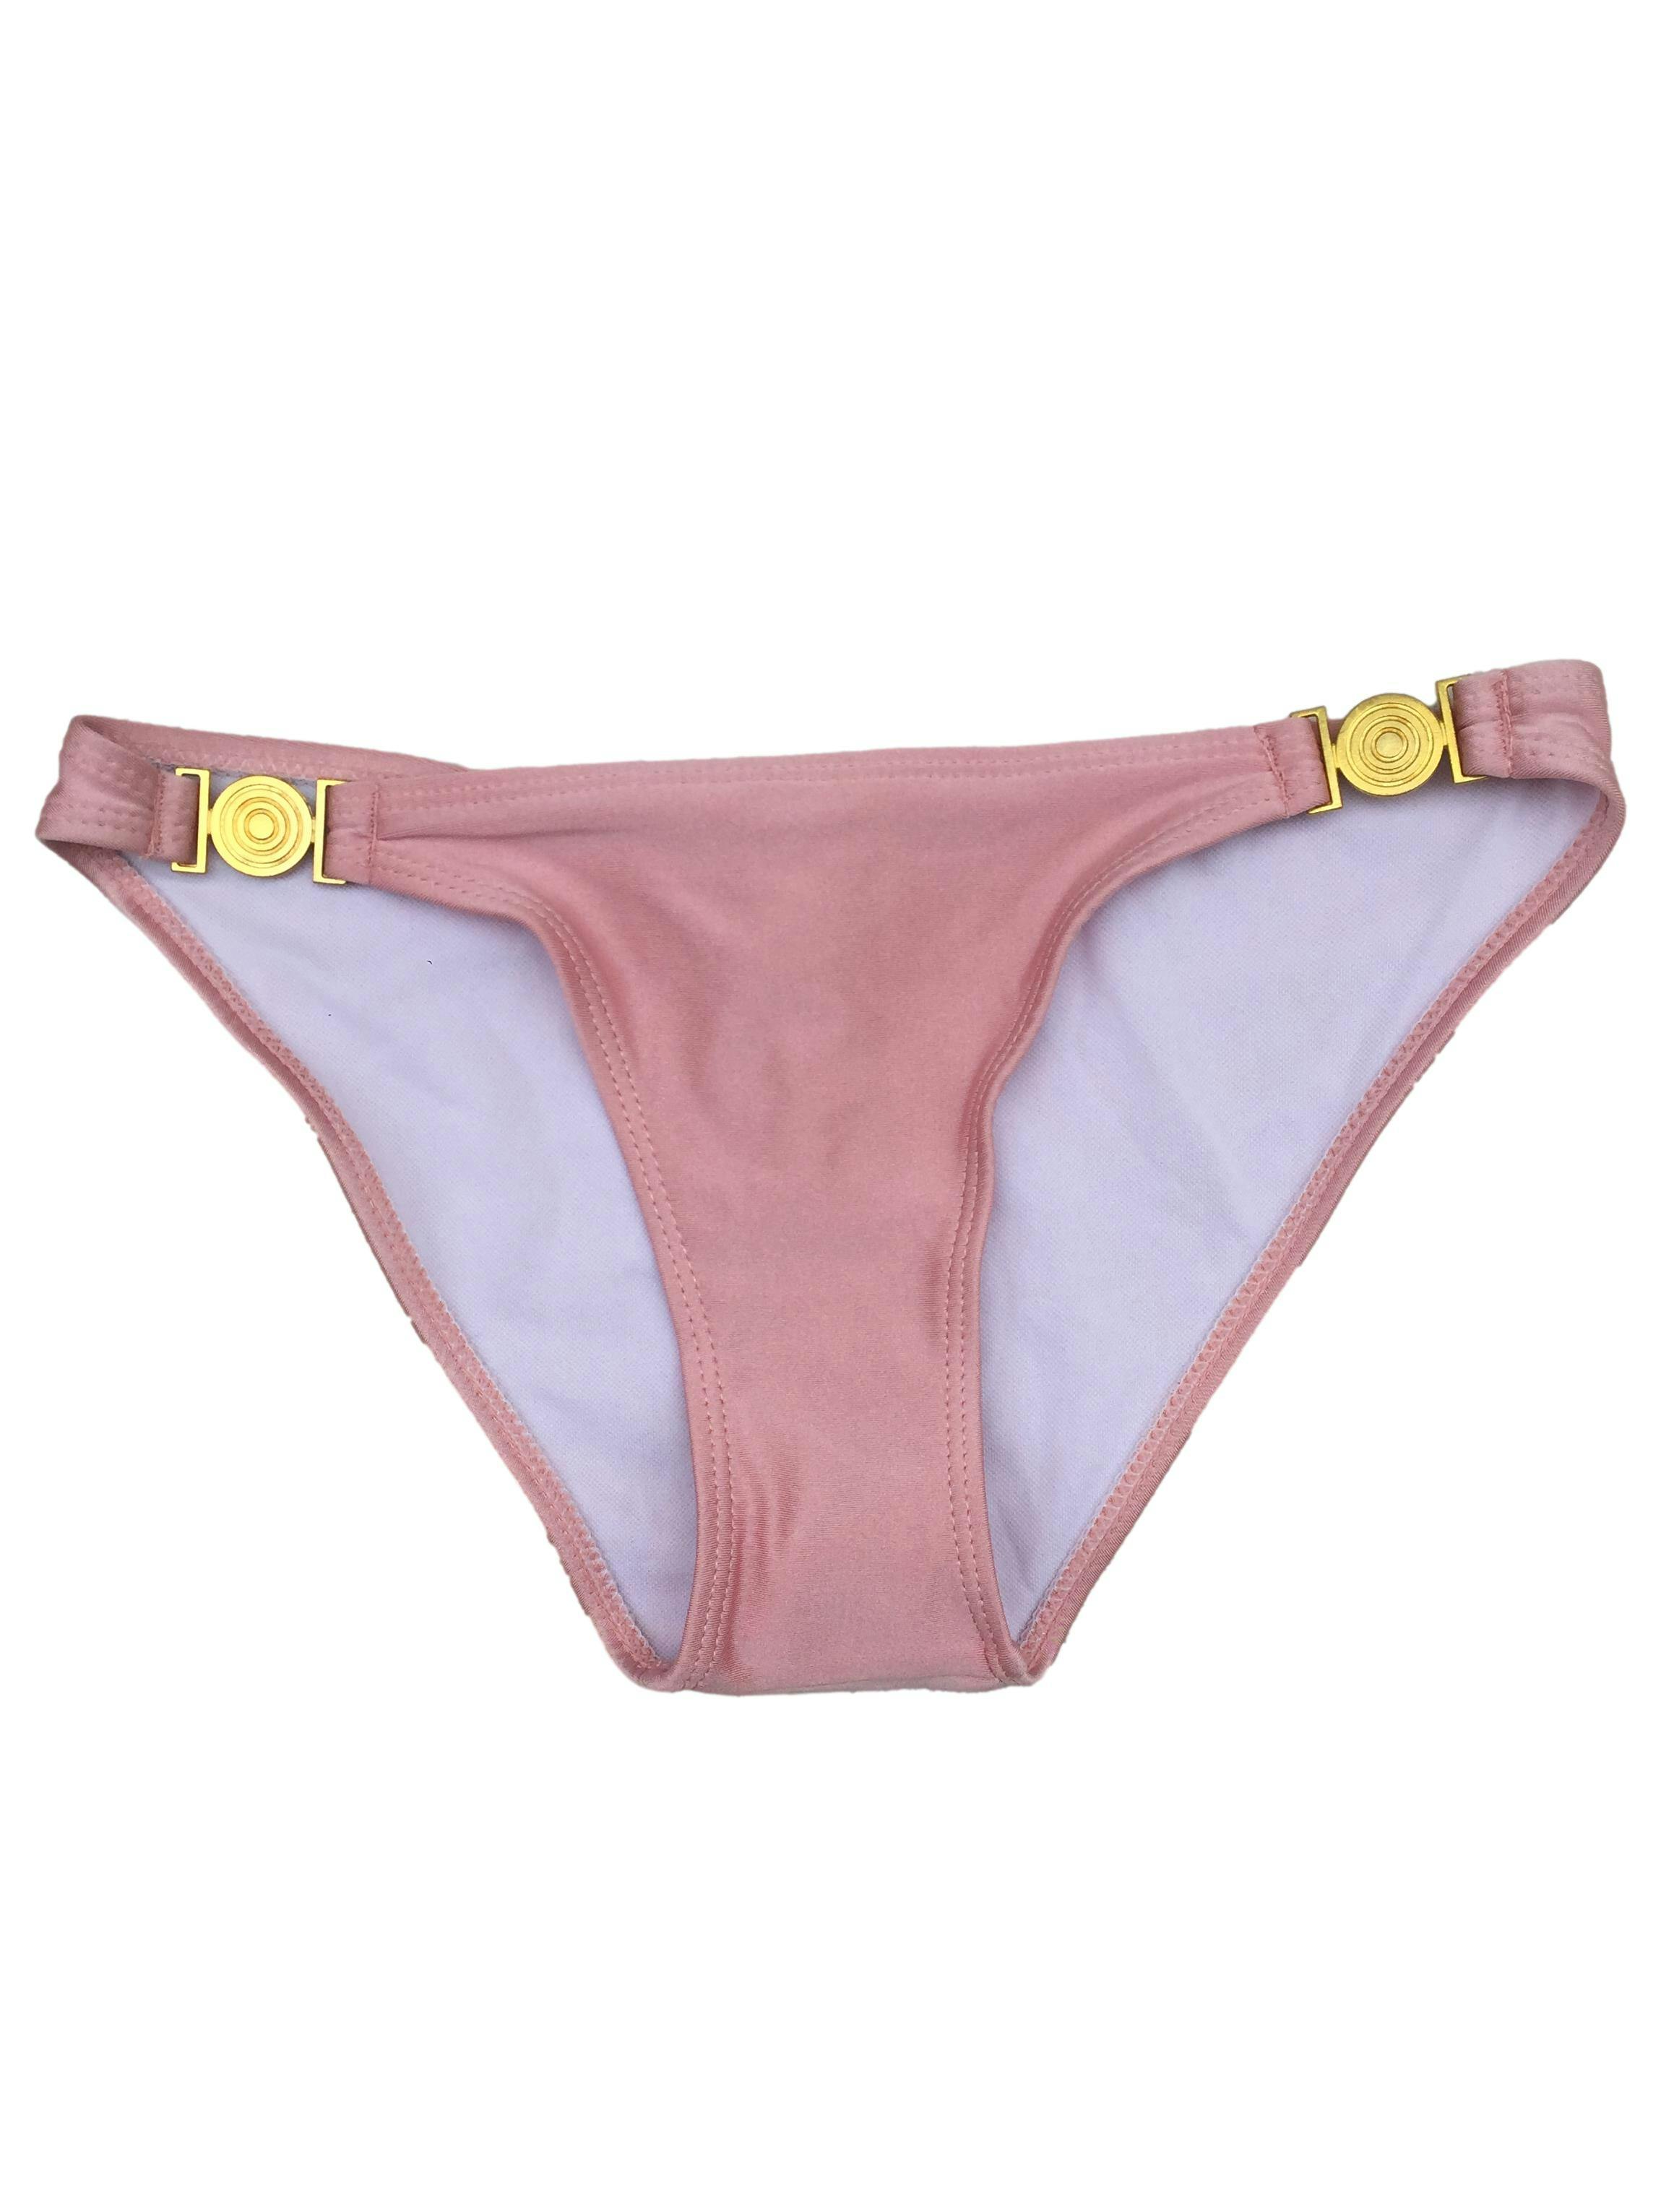 Truza ropa de baño rosa perlado, detalle de círculos dorados. CIntura: 66cm. Nuevo sin etiqueta